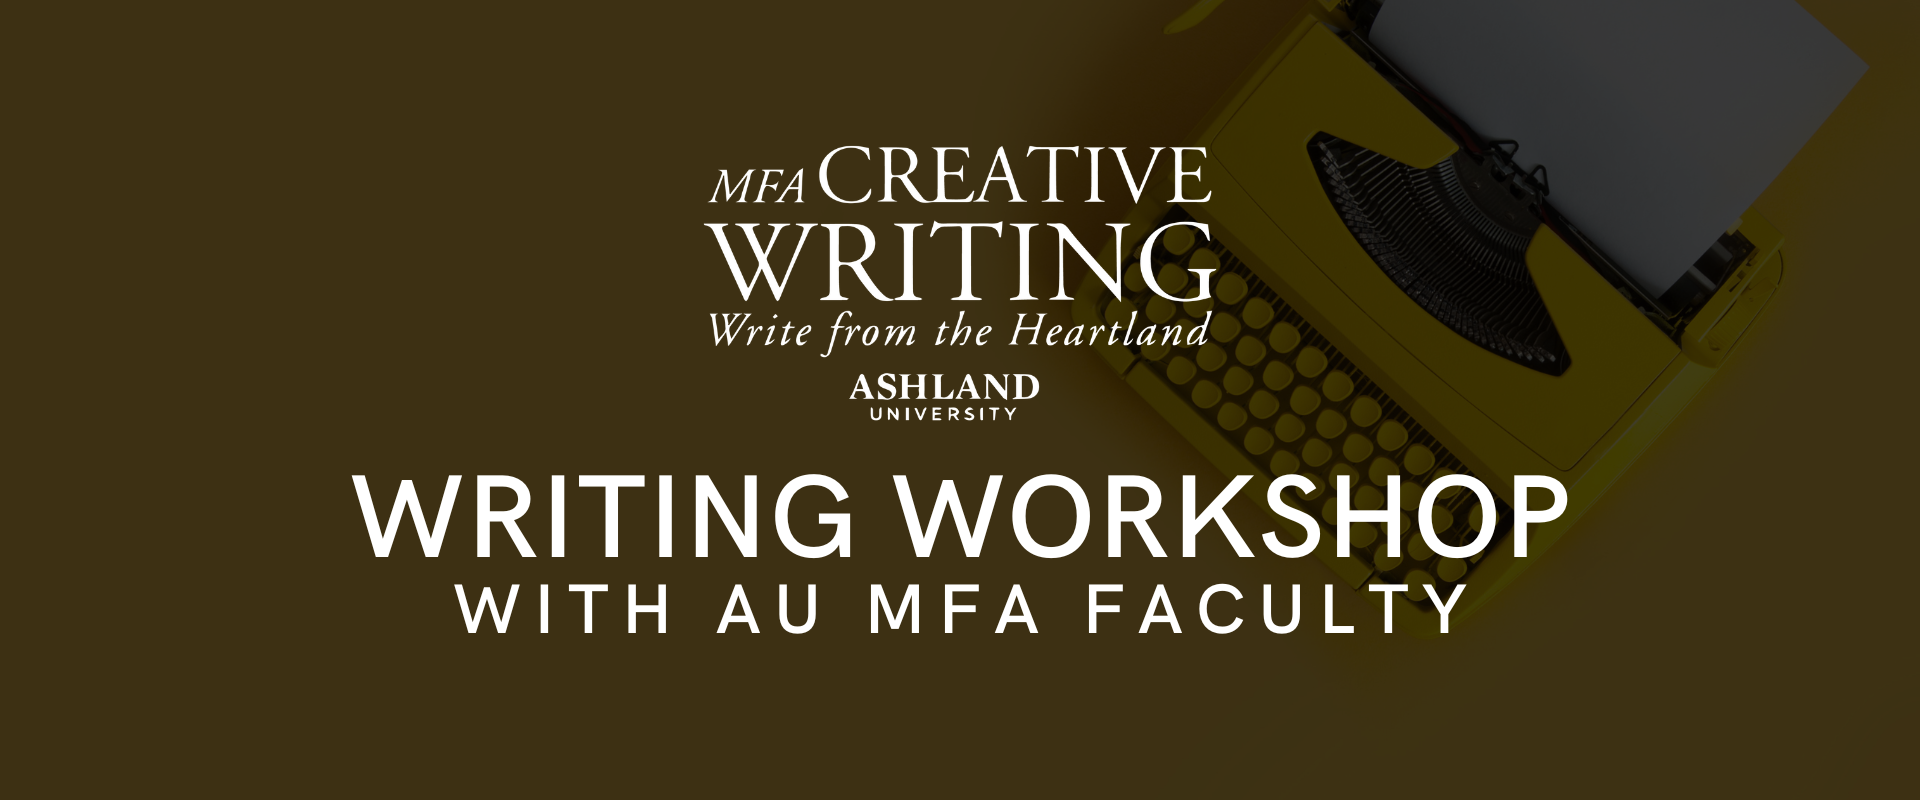 MFA Creative Writing Ashland University Writing Workshop